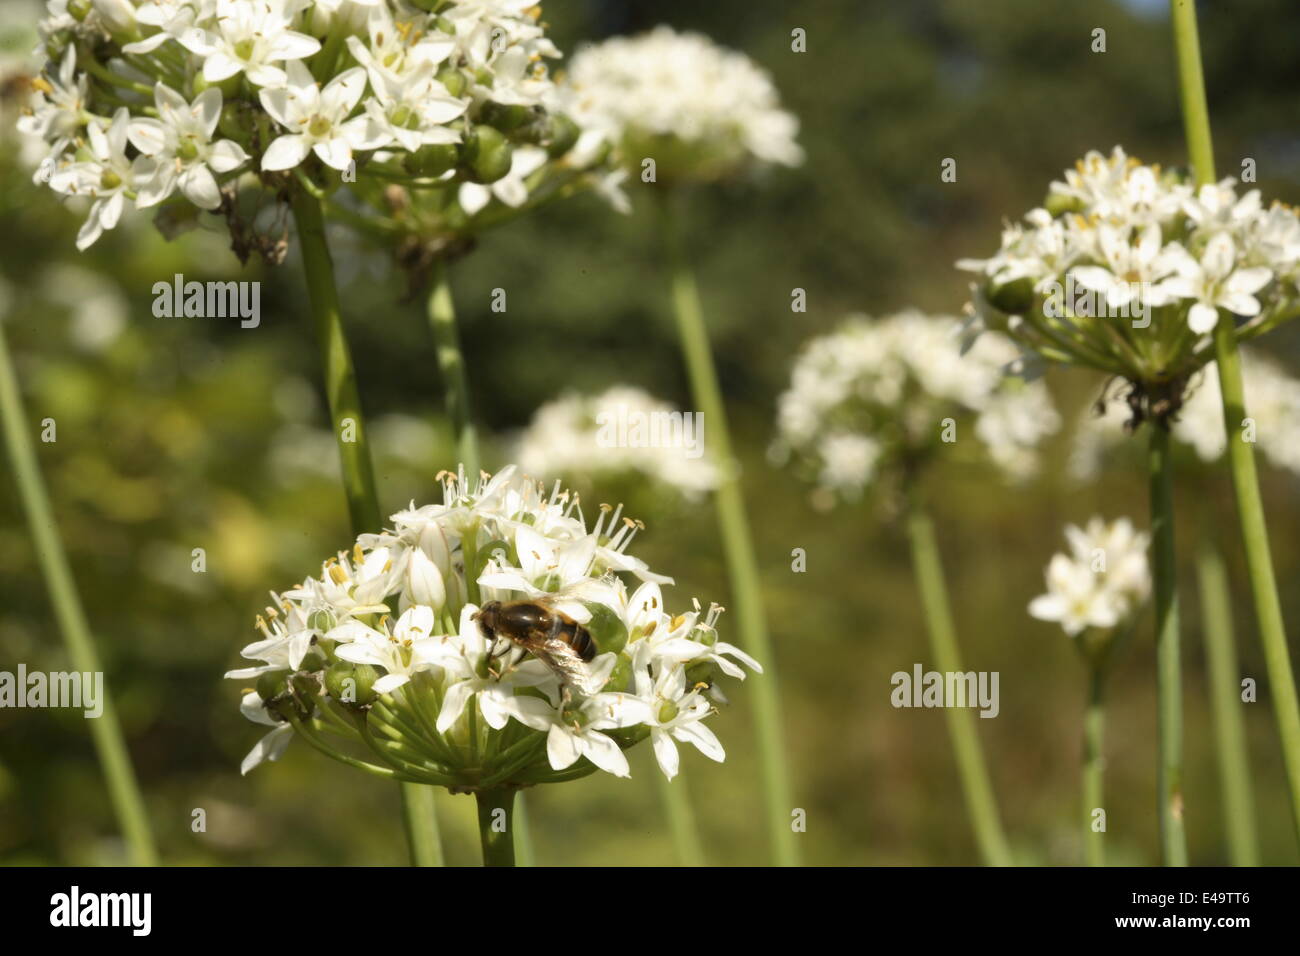 Garlic chives - Allium tuberosum 'NewBelt' Stock Photo